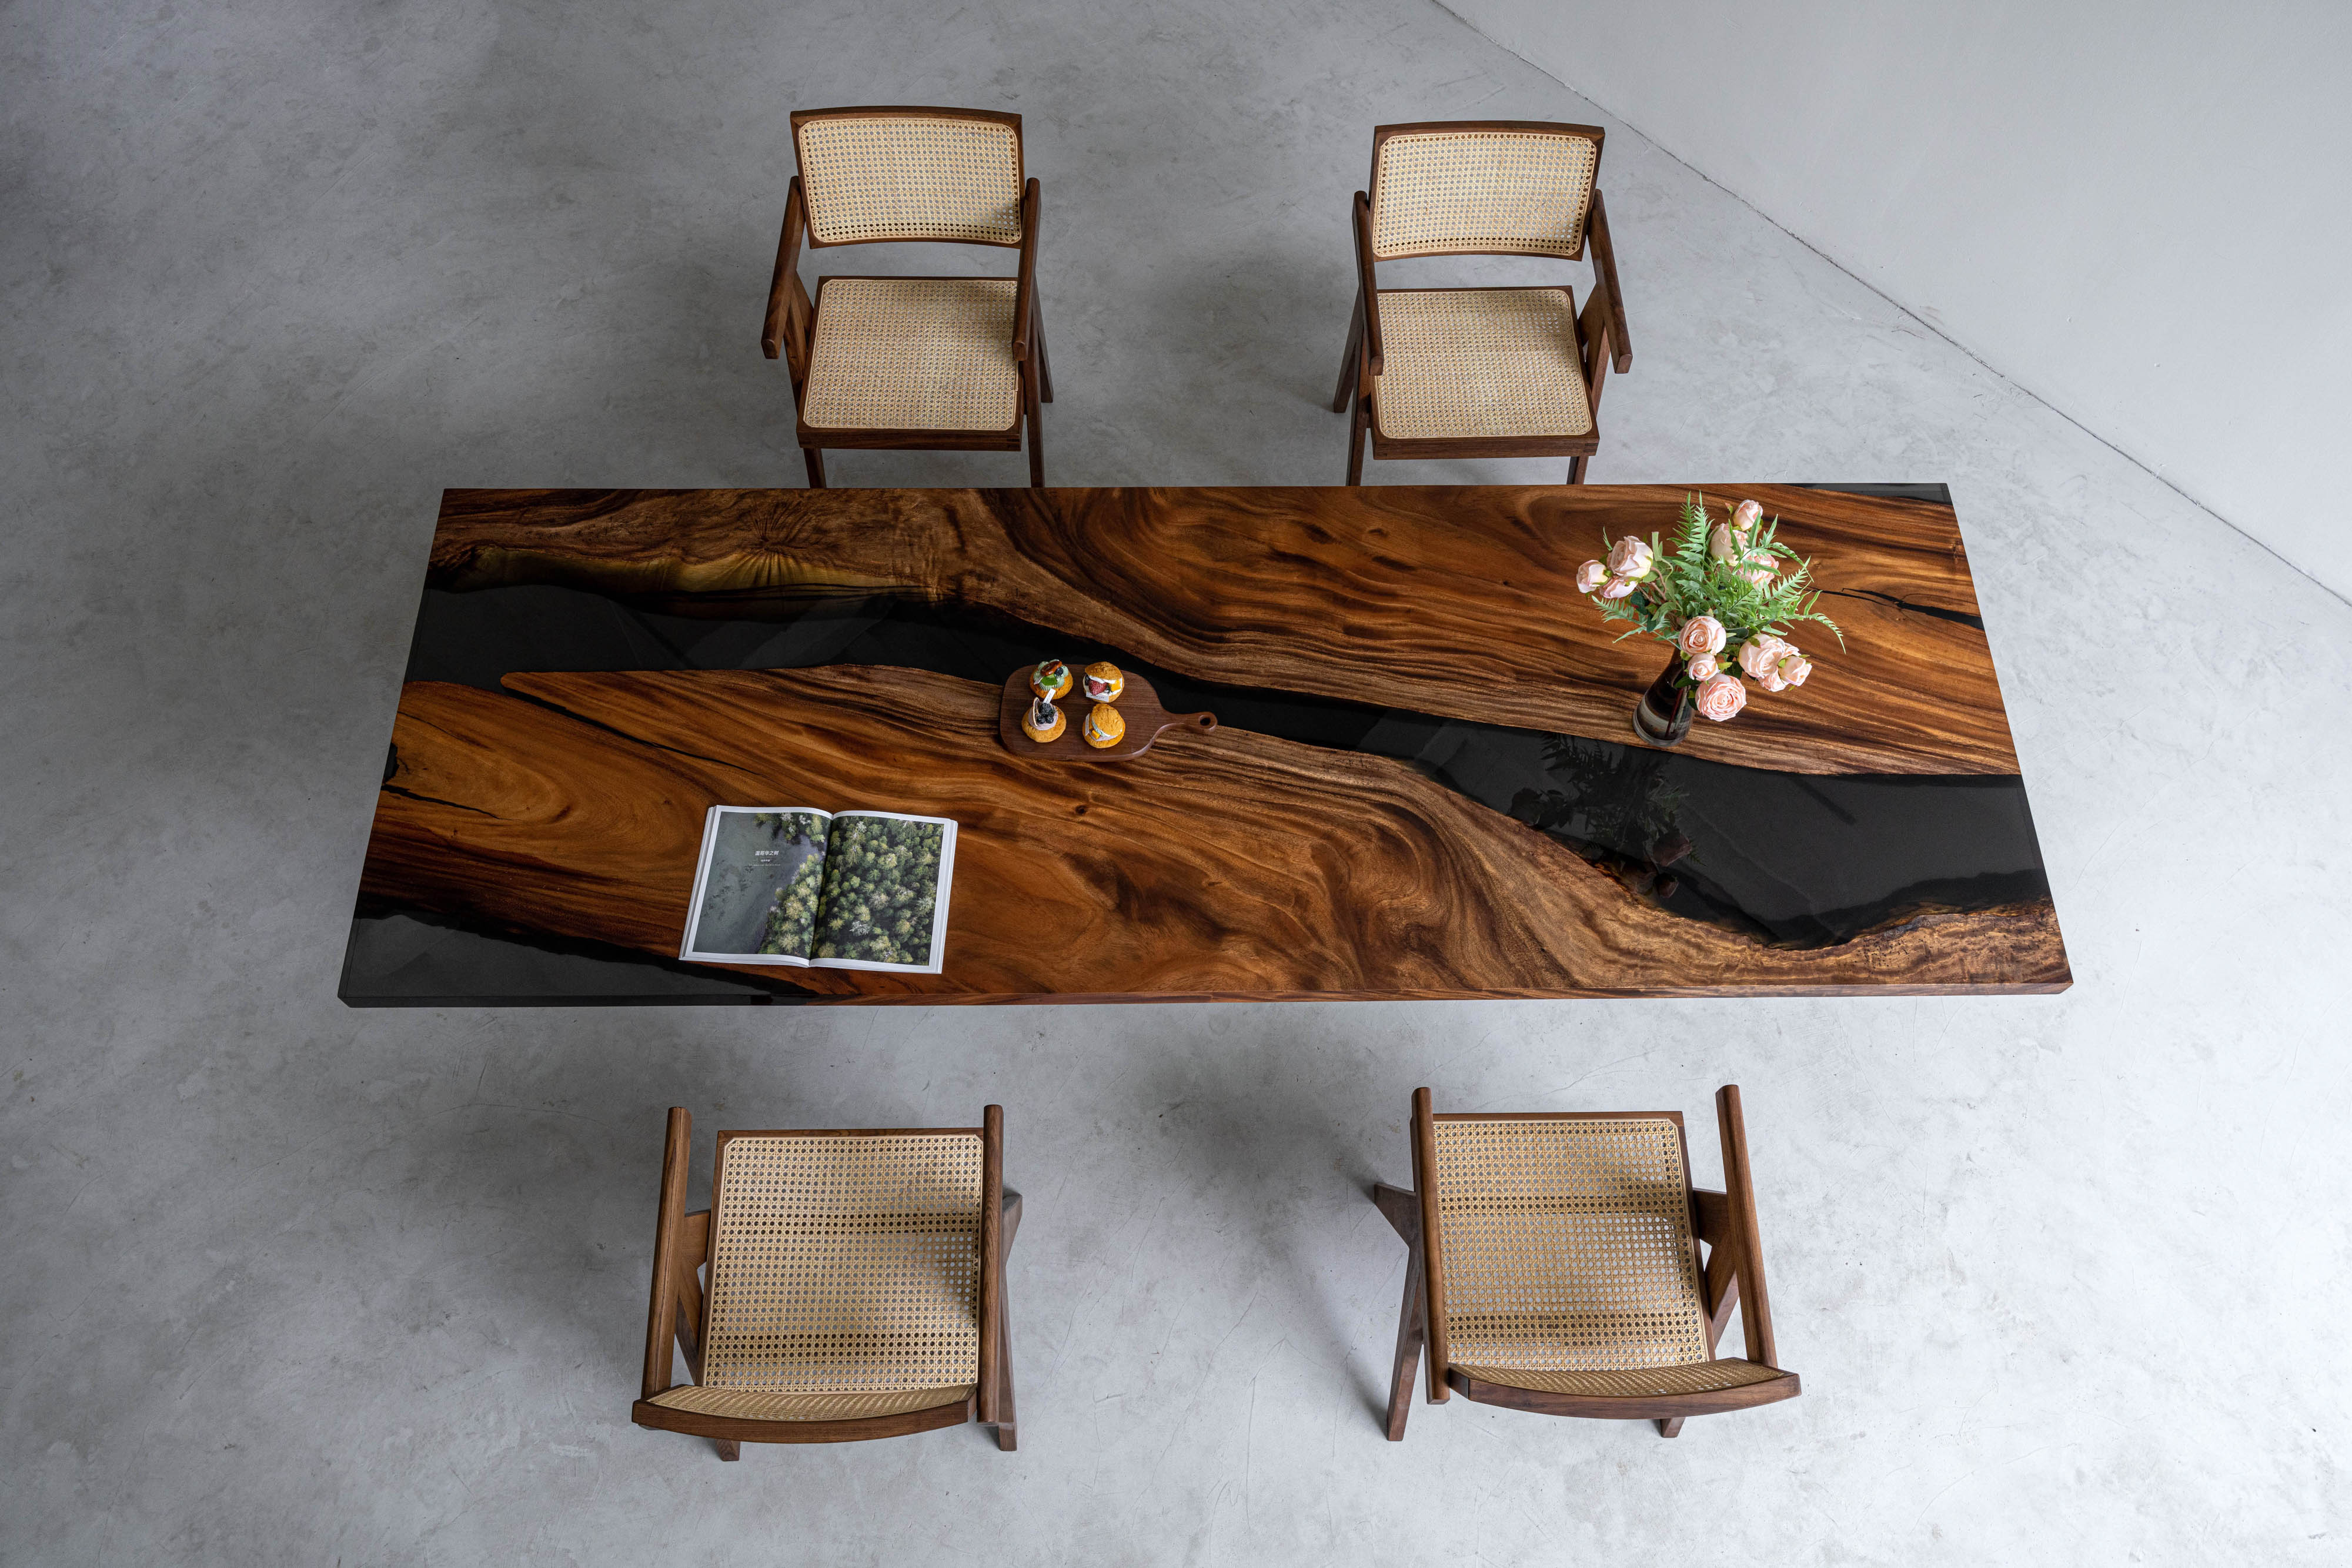 Tavolo in resina epossidica tinto color noce nero, utilizza legno di noce del Sud America